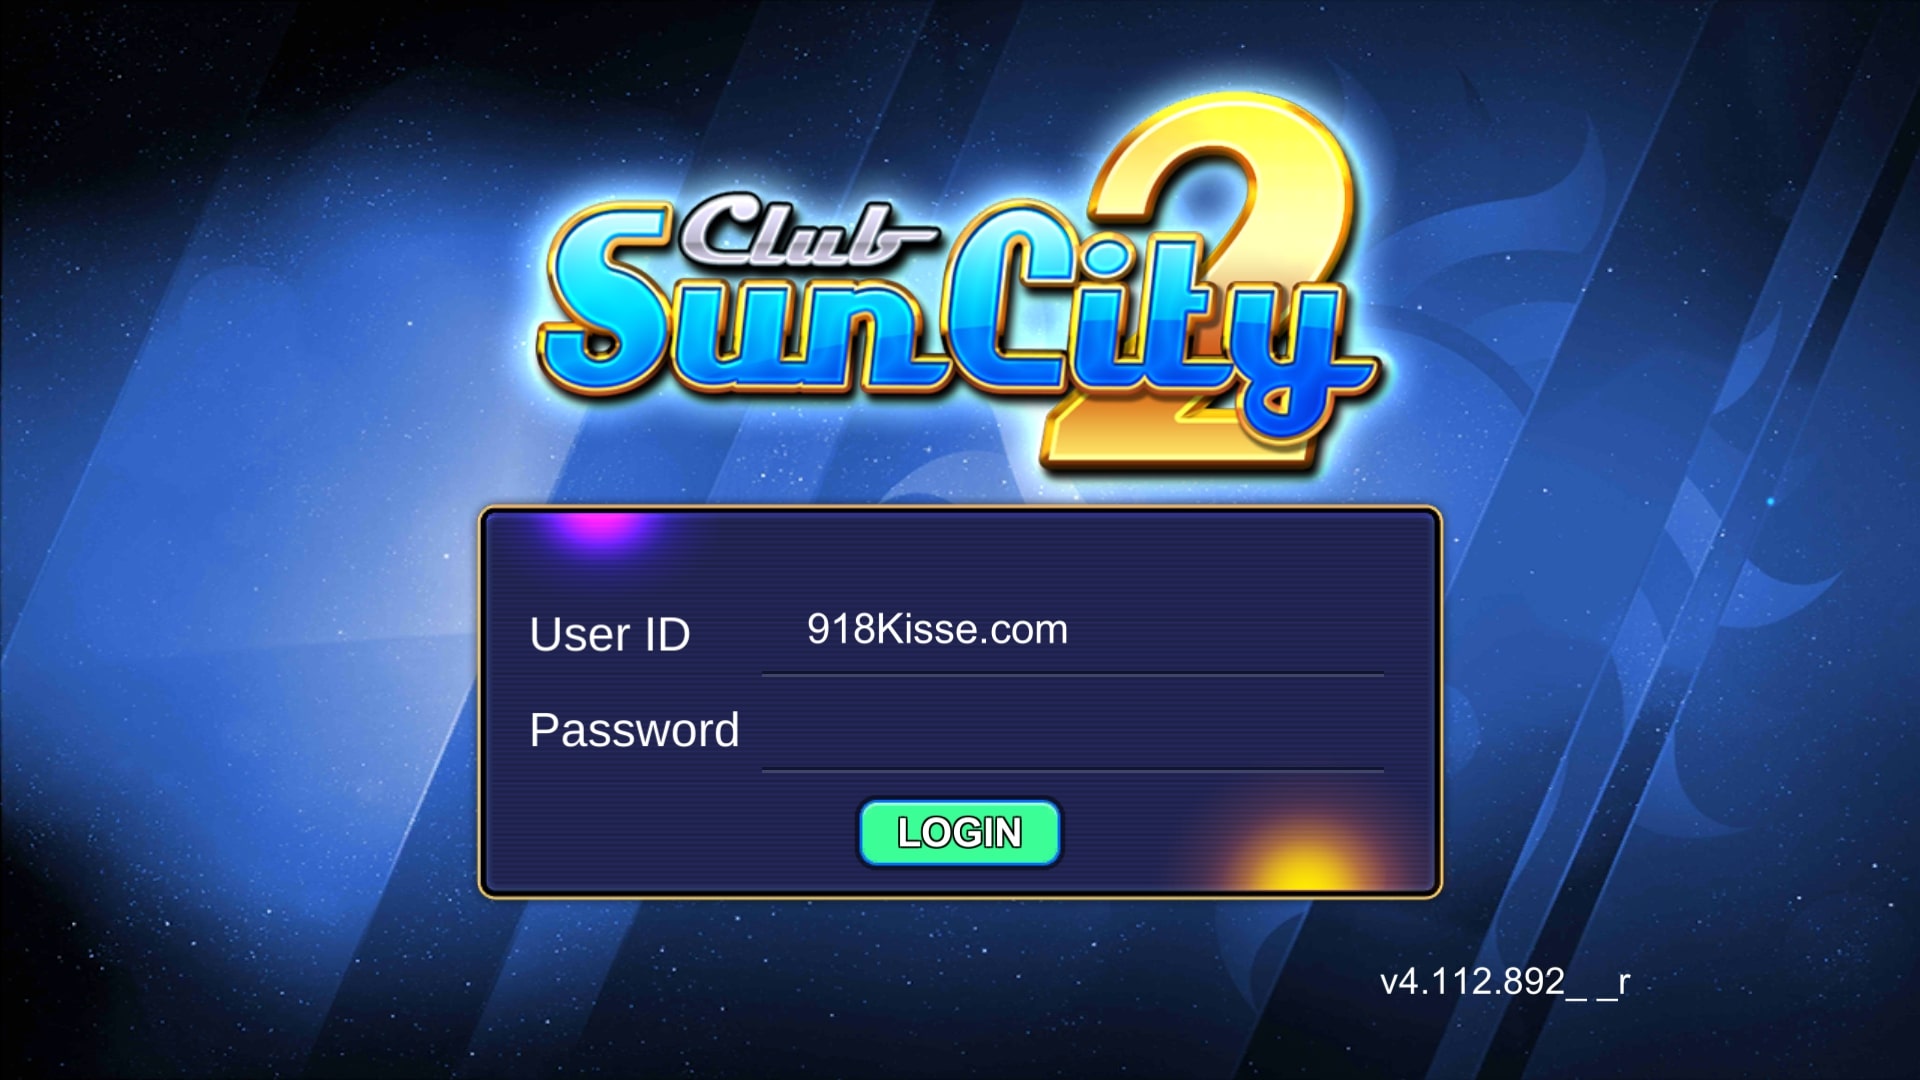 suncity2 login